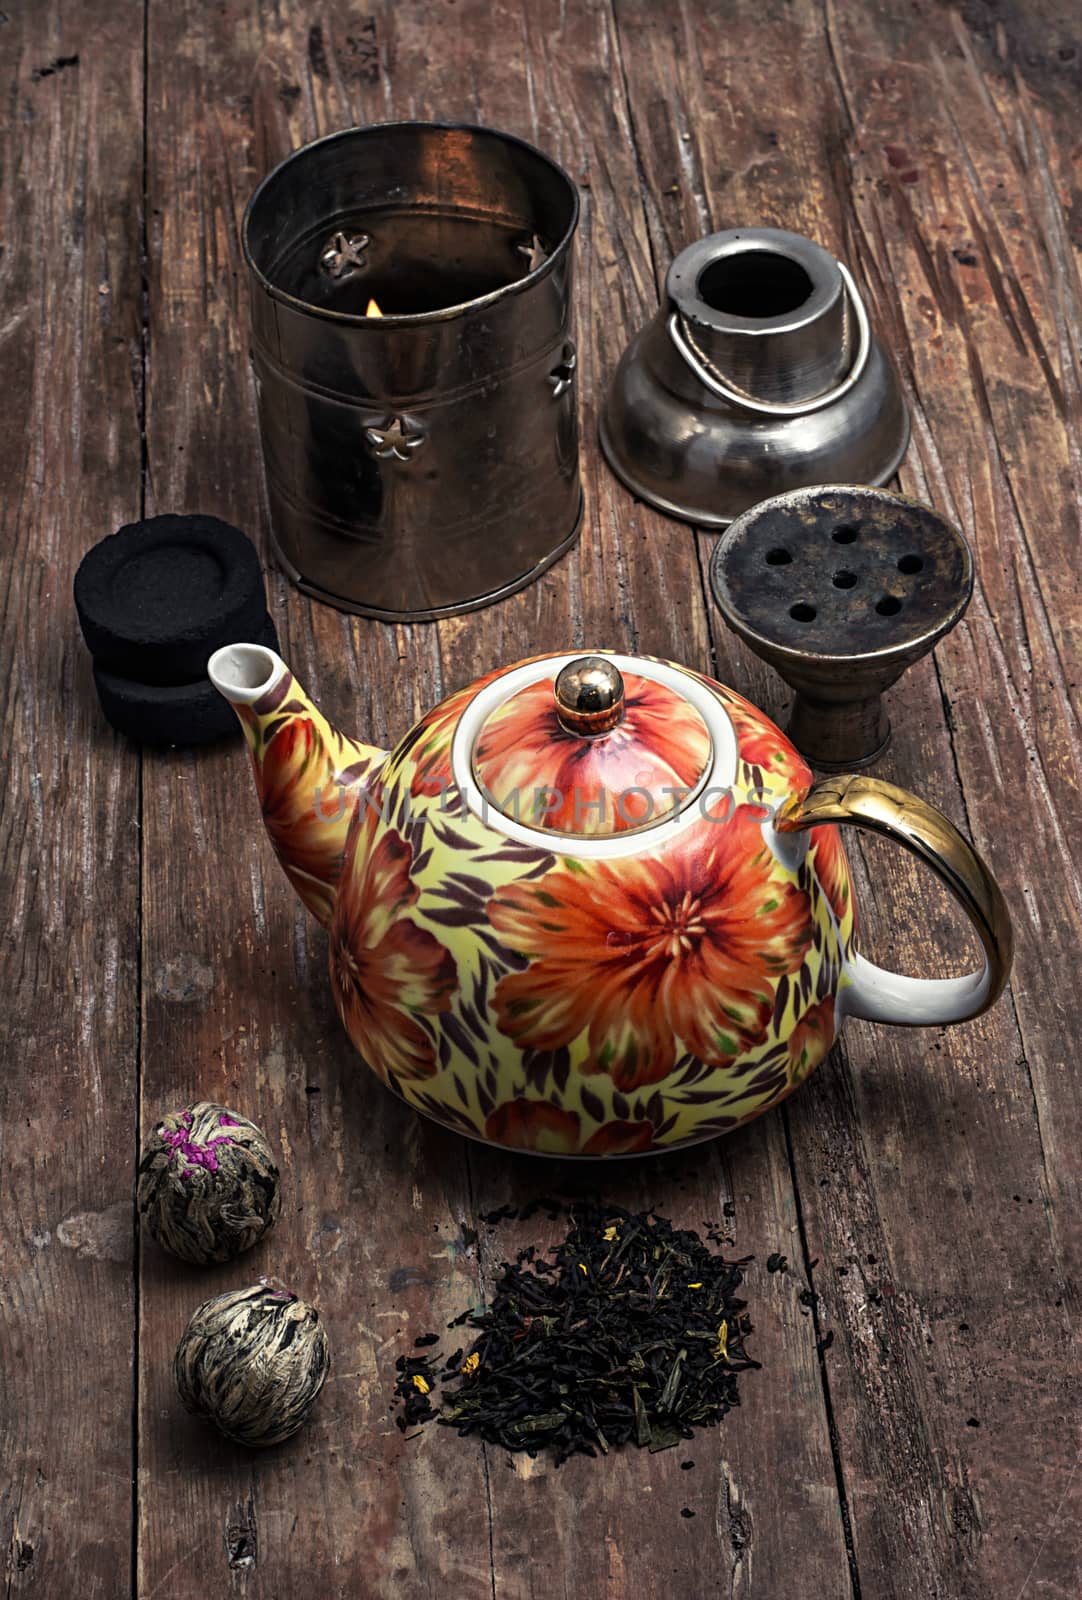 hookah and dry elite tea leaves by LMykola